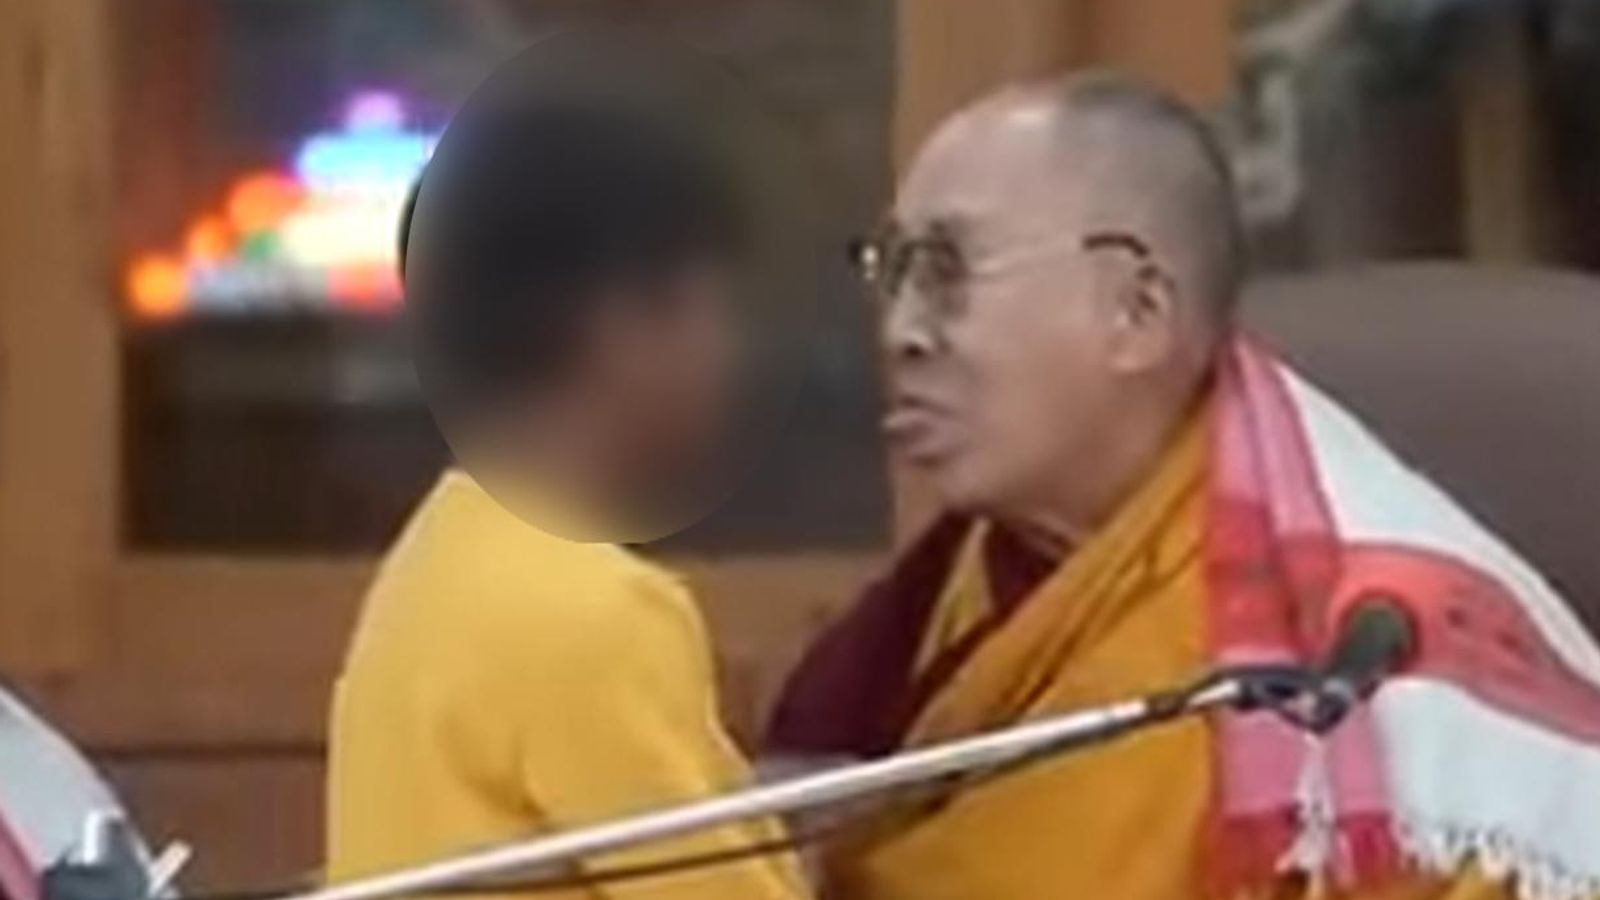 тибетский лидер: «Несправедливо» критиковать Далай-ламу за то, что он поцеловал мальчика и попросил его «пососать мой язык» |  Новости мира